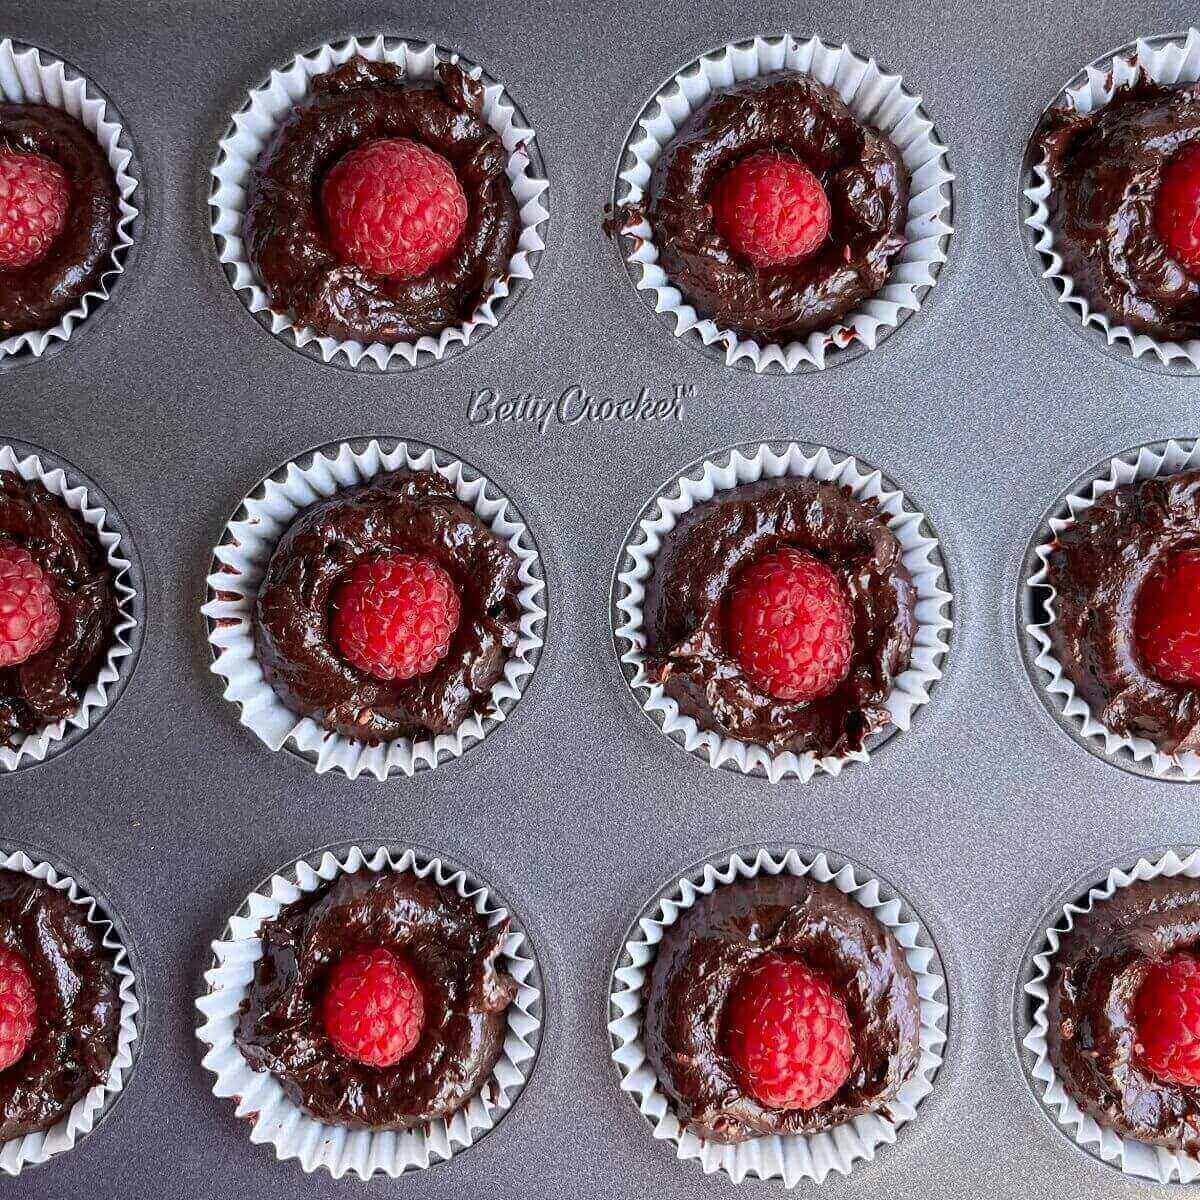 Chocolate raspberry treats in a mini muffin pan.